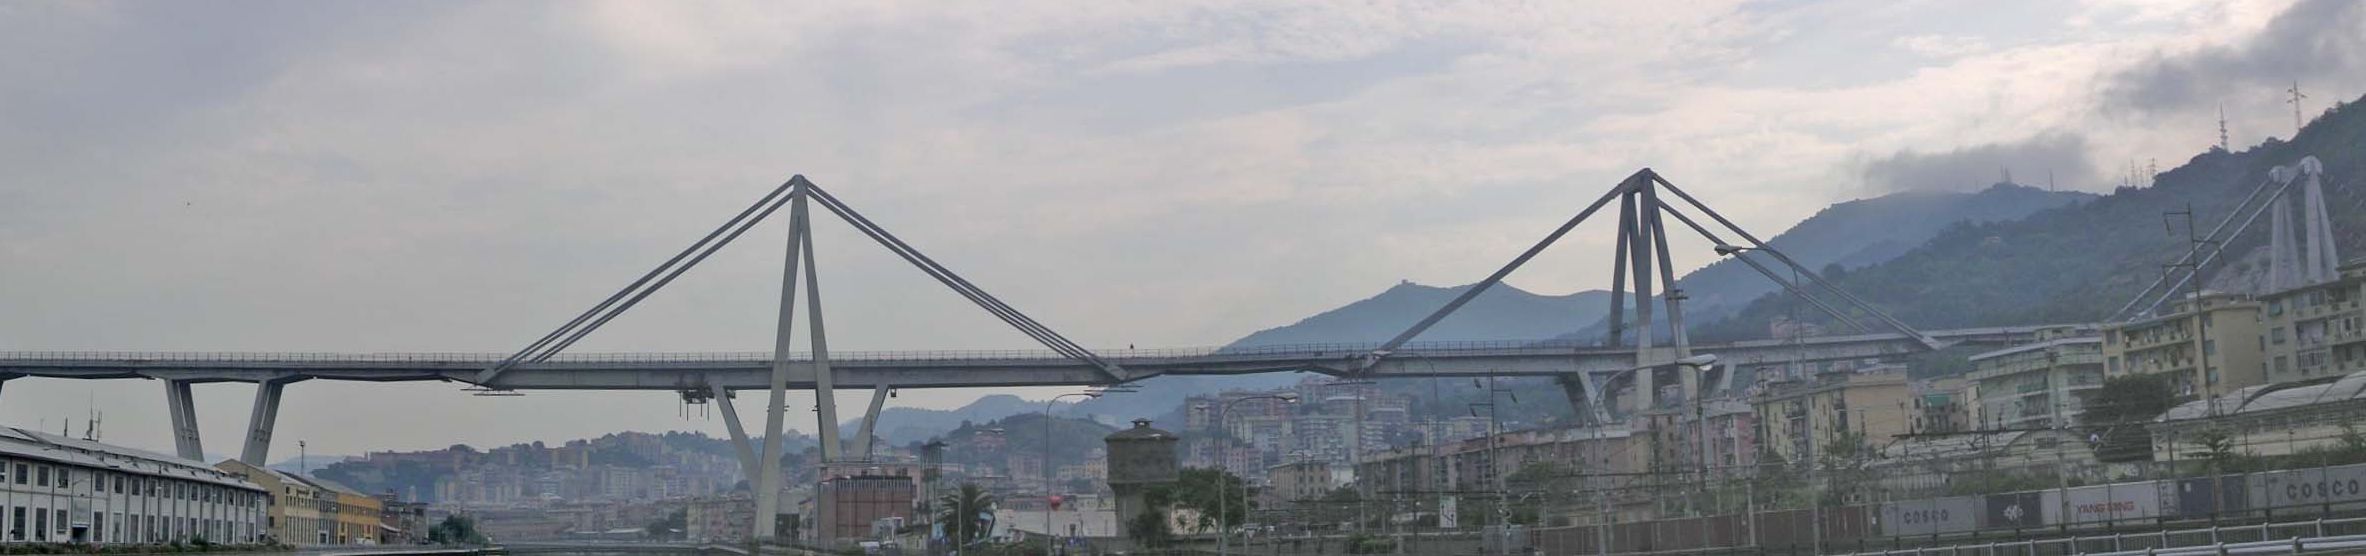 Crollo ponte Morandi a Genova: il calcio non se n’è accorto